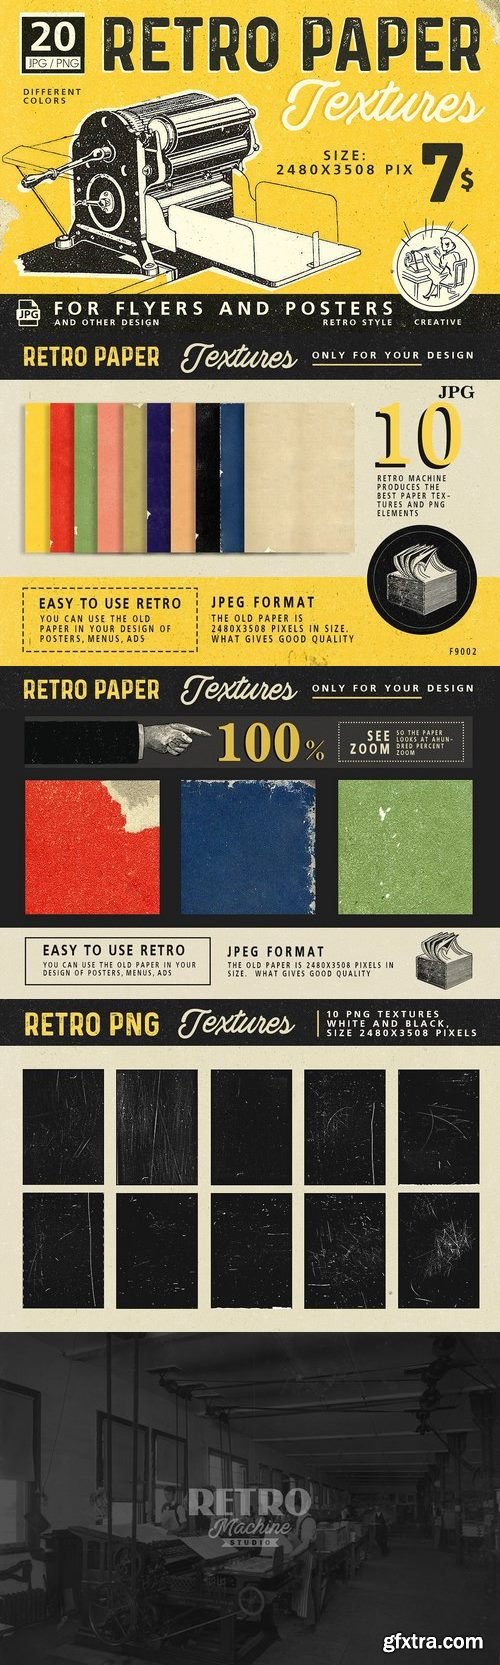 CM - Retro Paper Textures 1658035